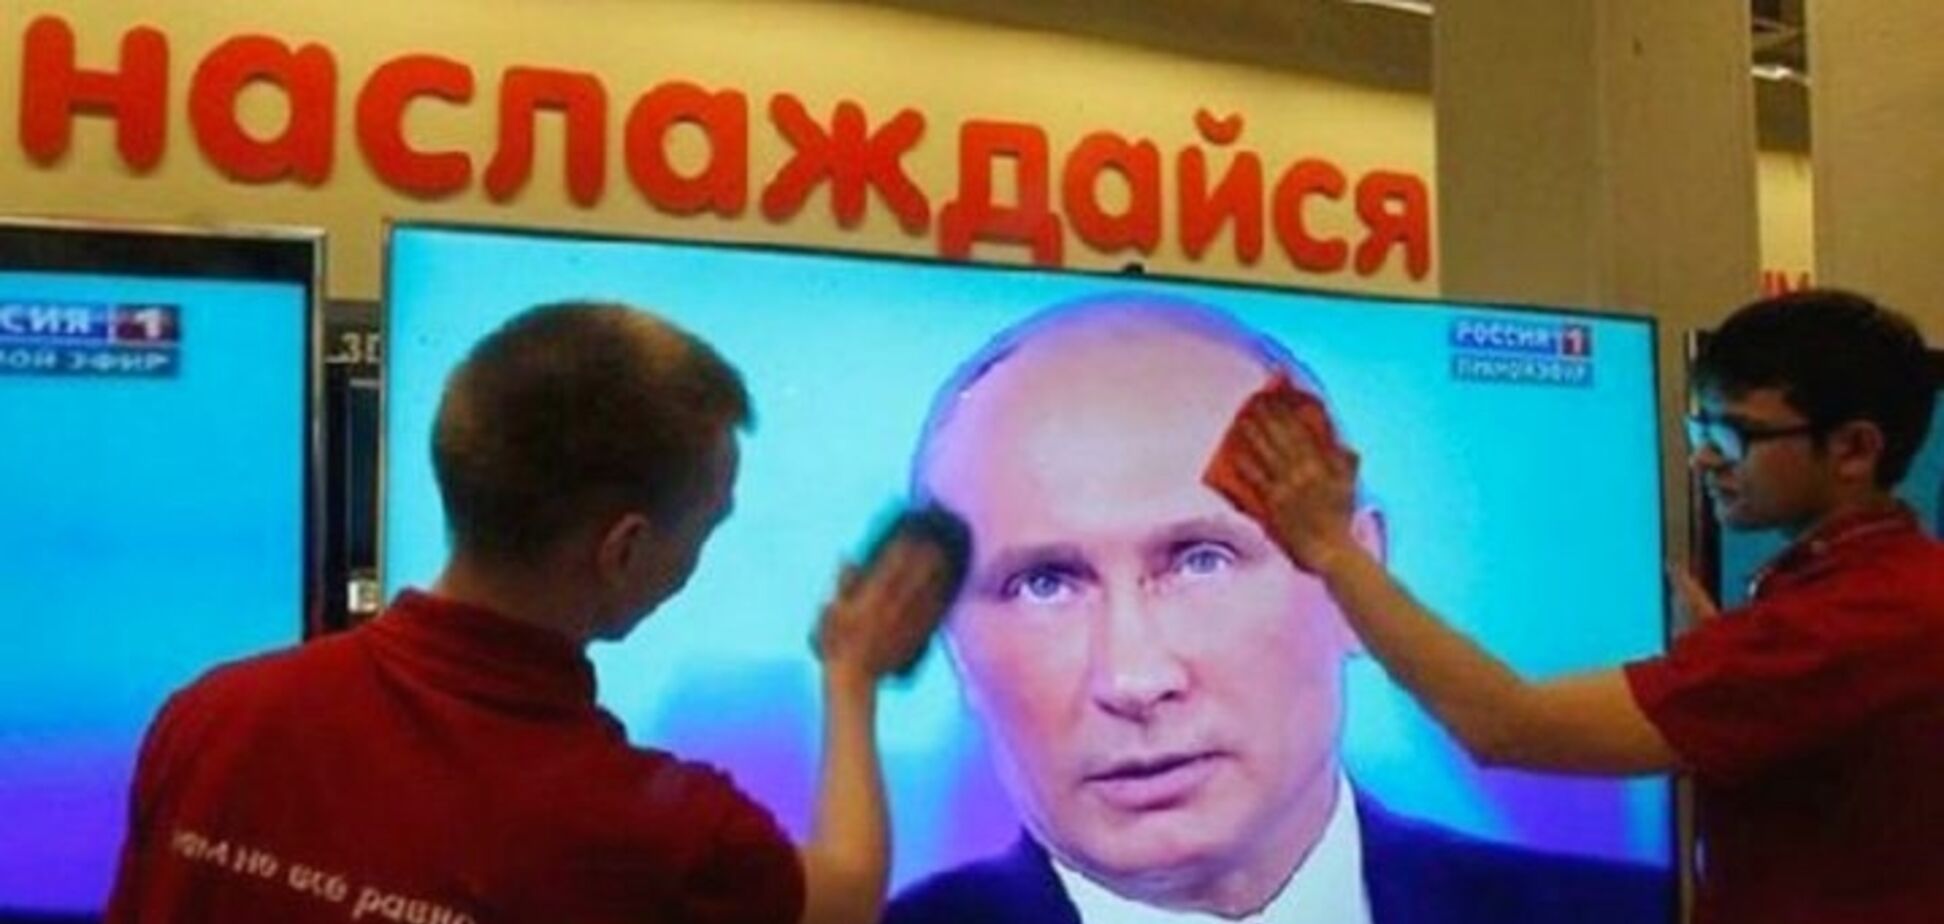 Поребрик News: в России испугались появления 'второй Украины'